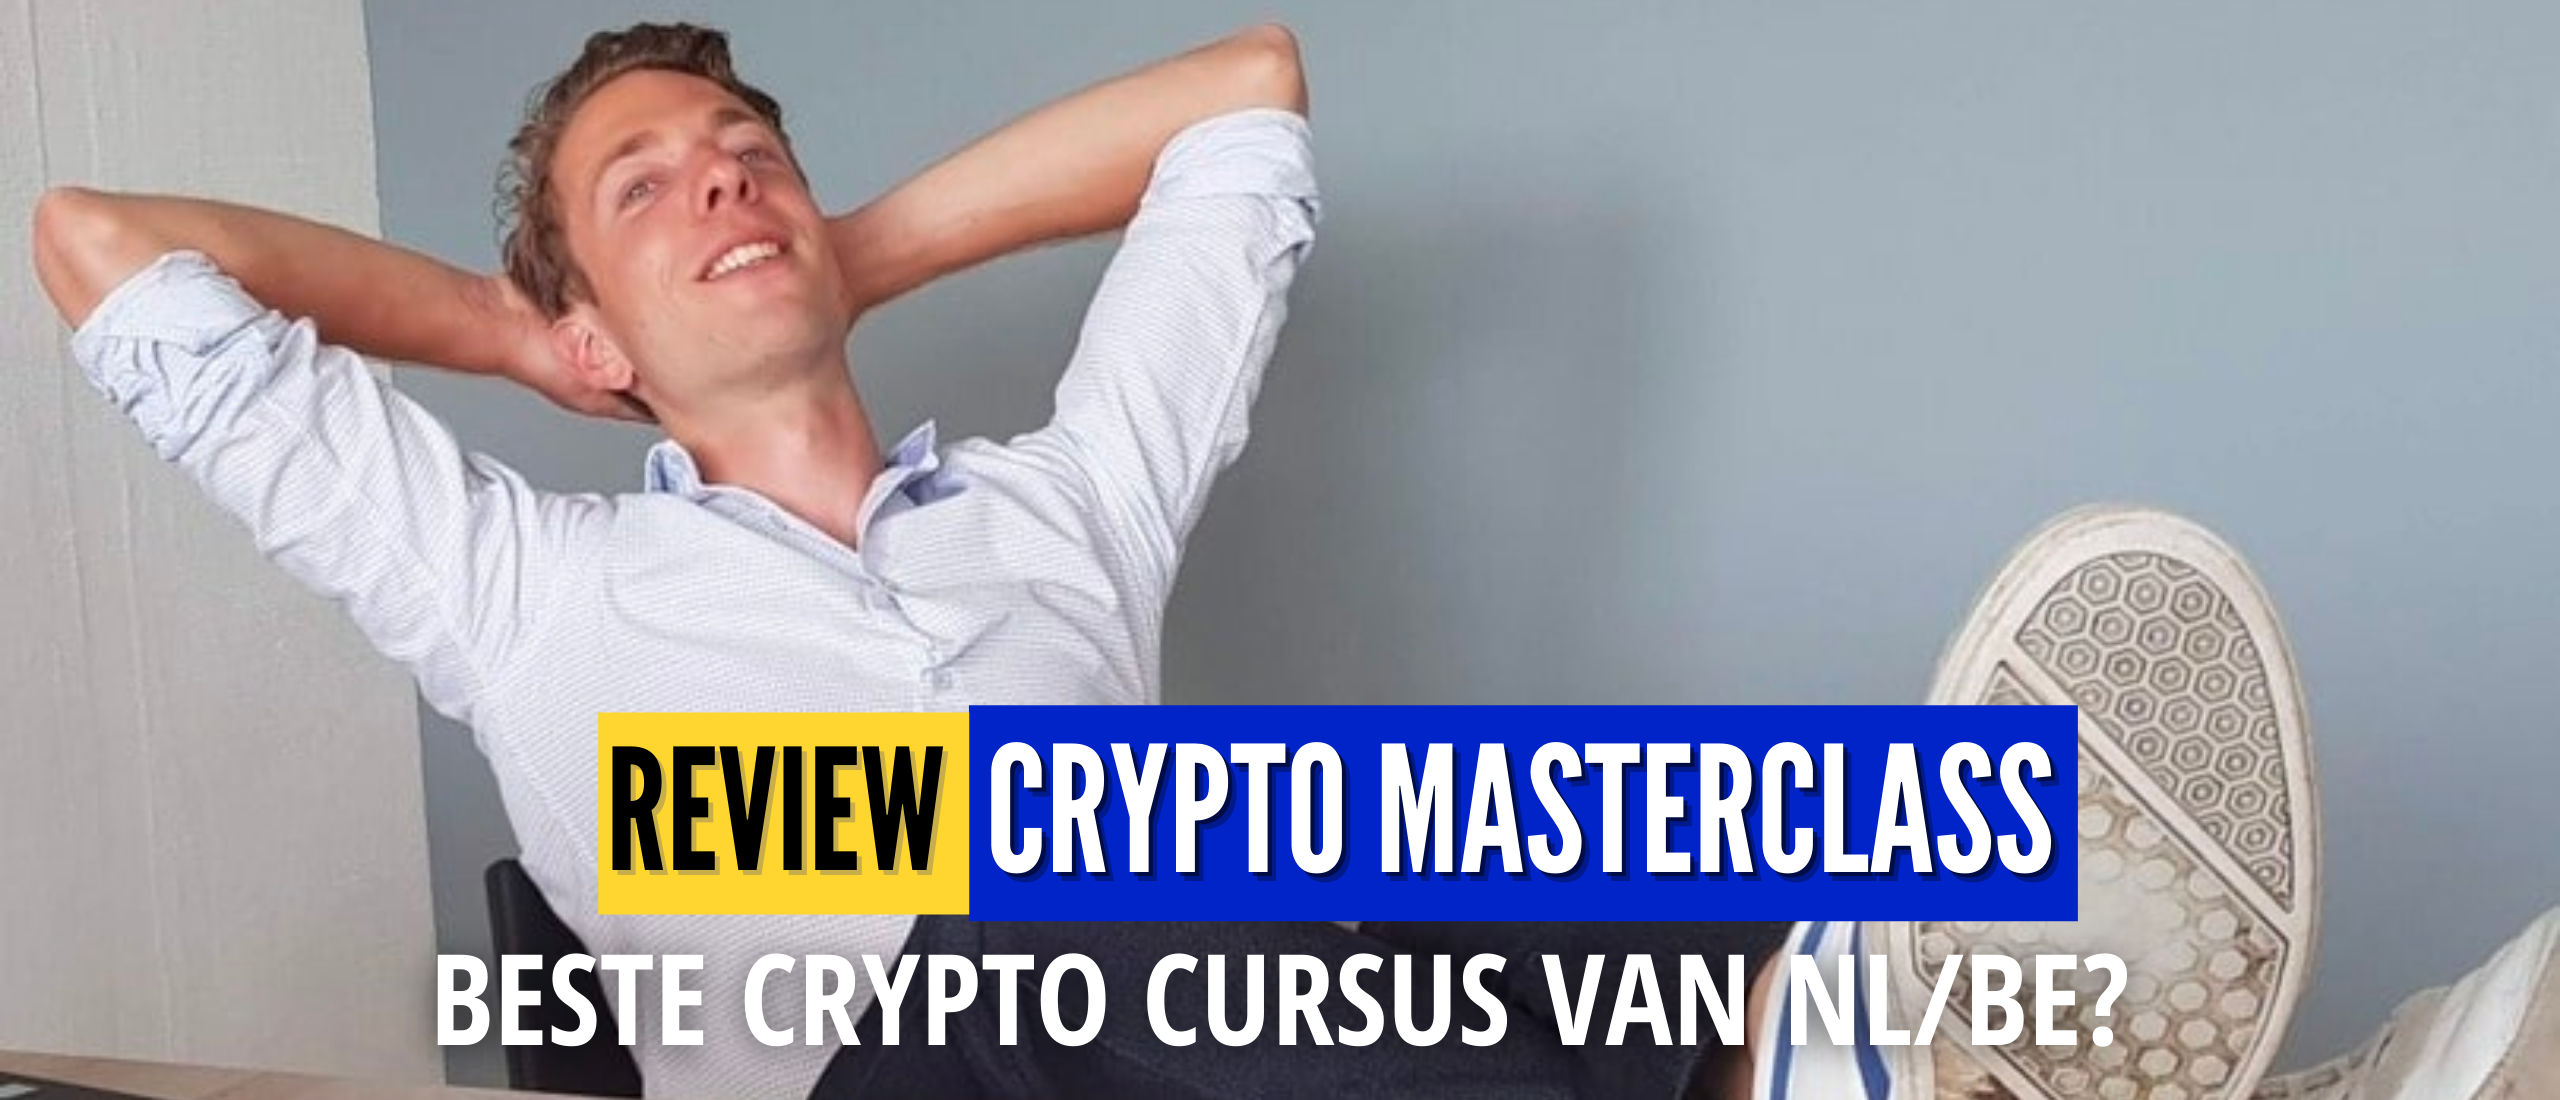 Crypto Masterclass Review (Alles Over Crypto) Ervaringen, Overzicht: Kritische Beoordeling